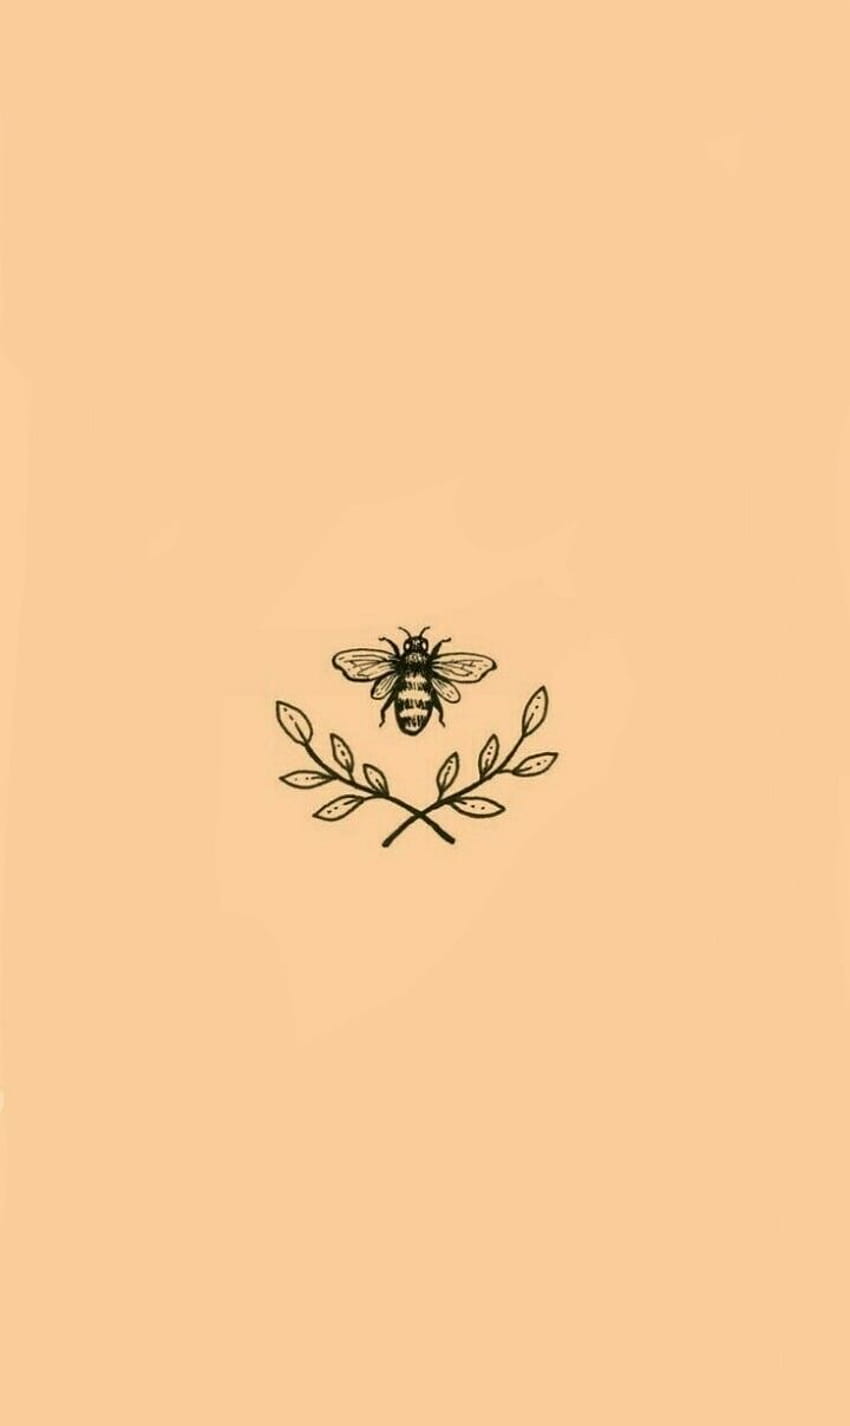 Vintage Bee, aesthetic bees HD phone wallpaper